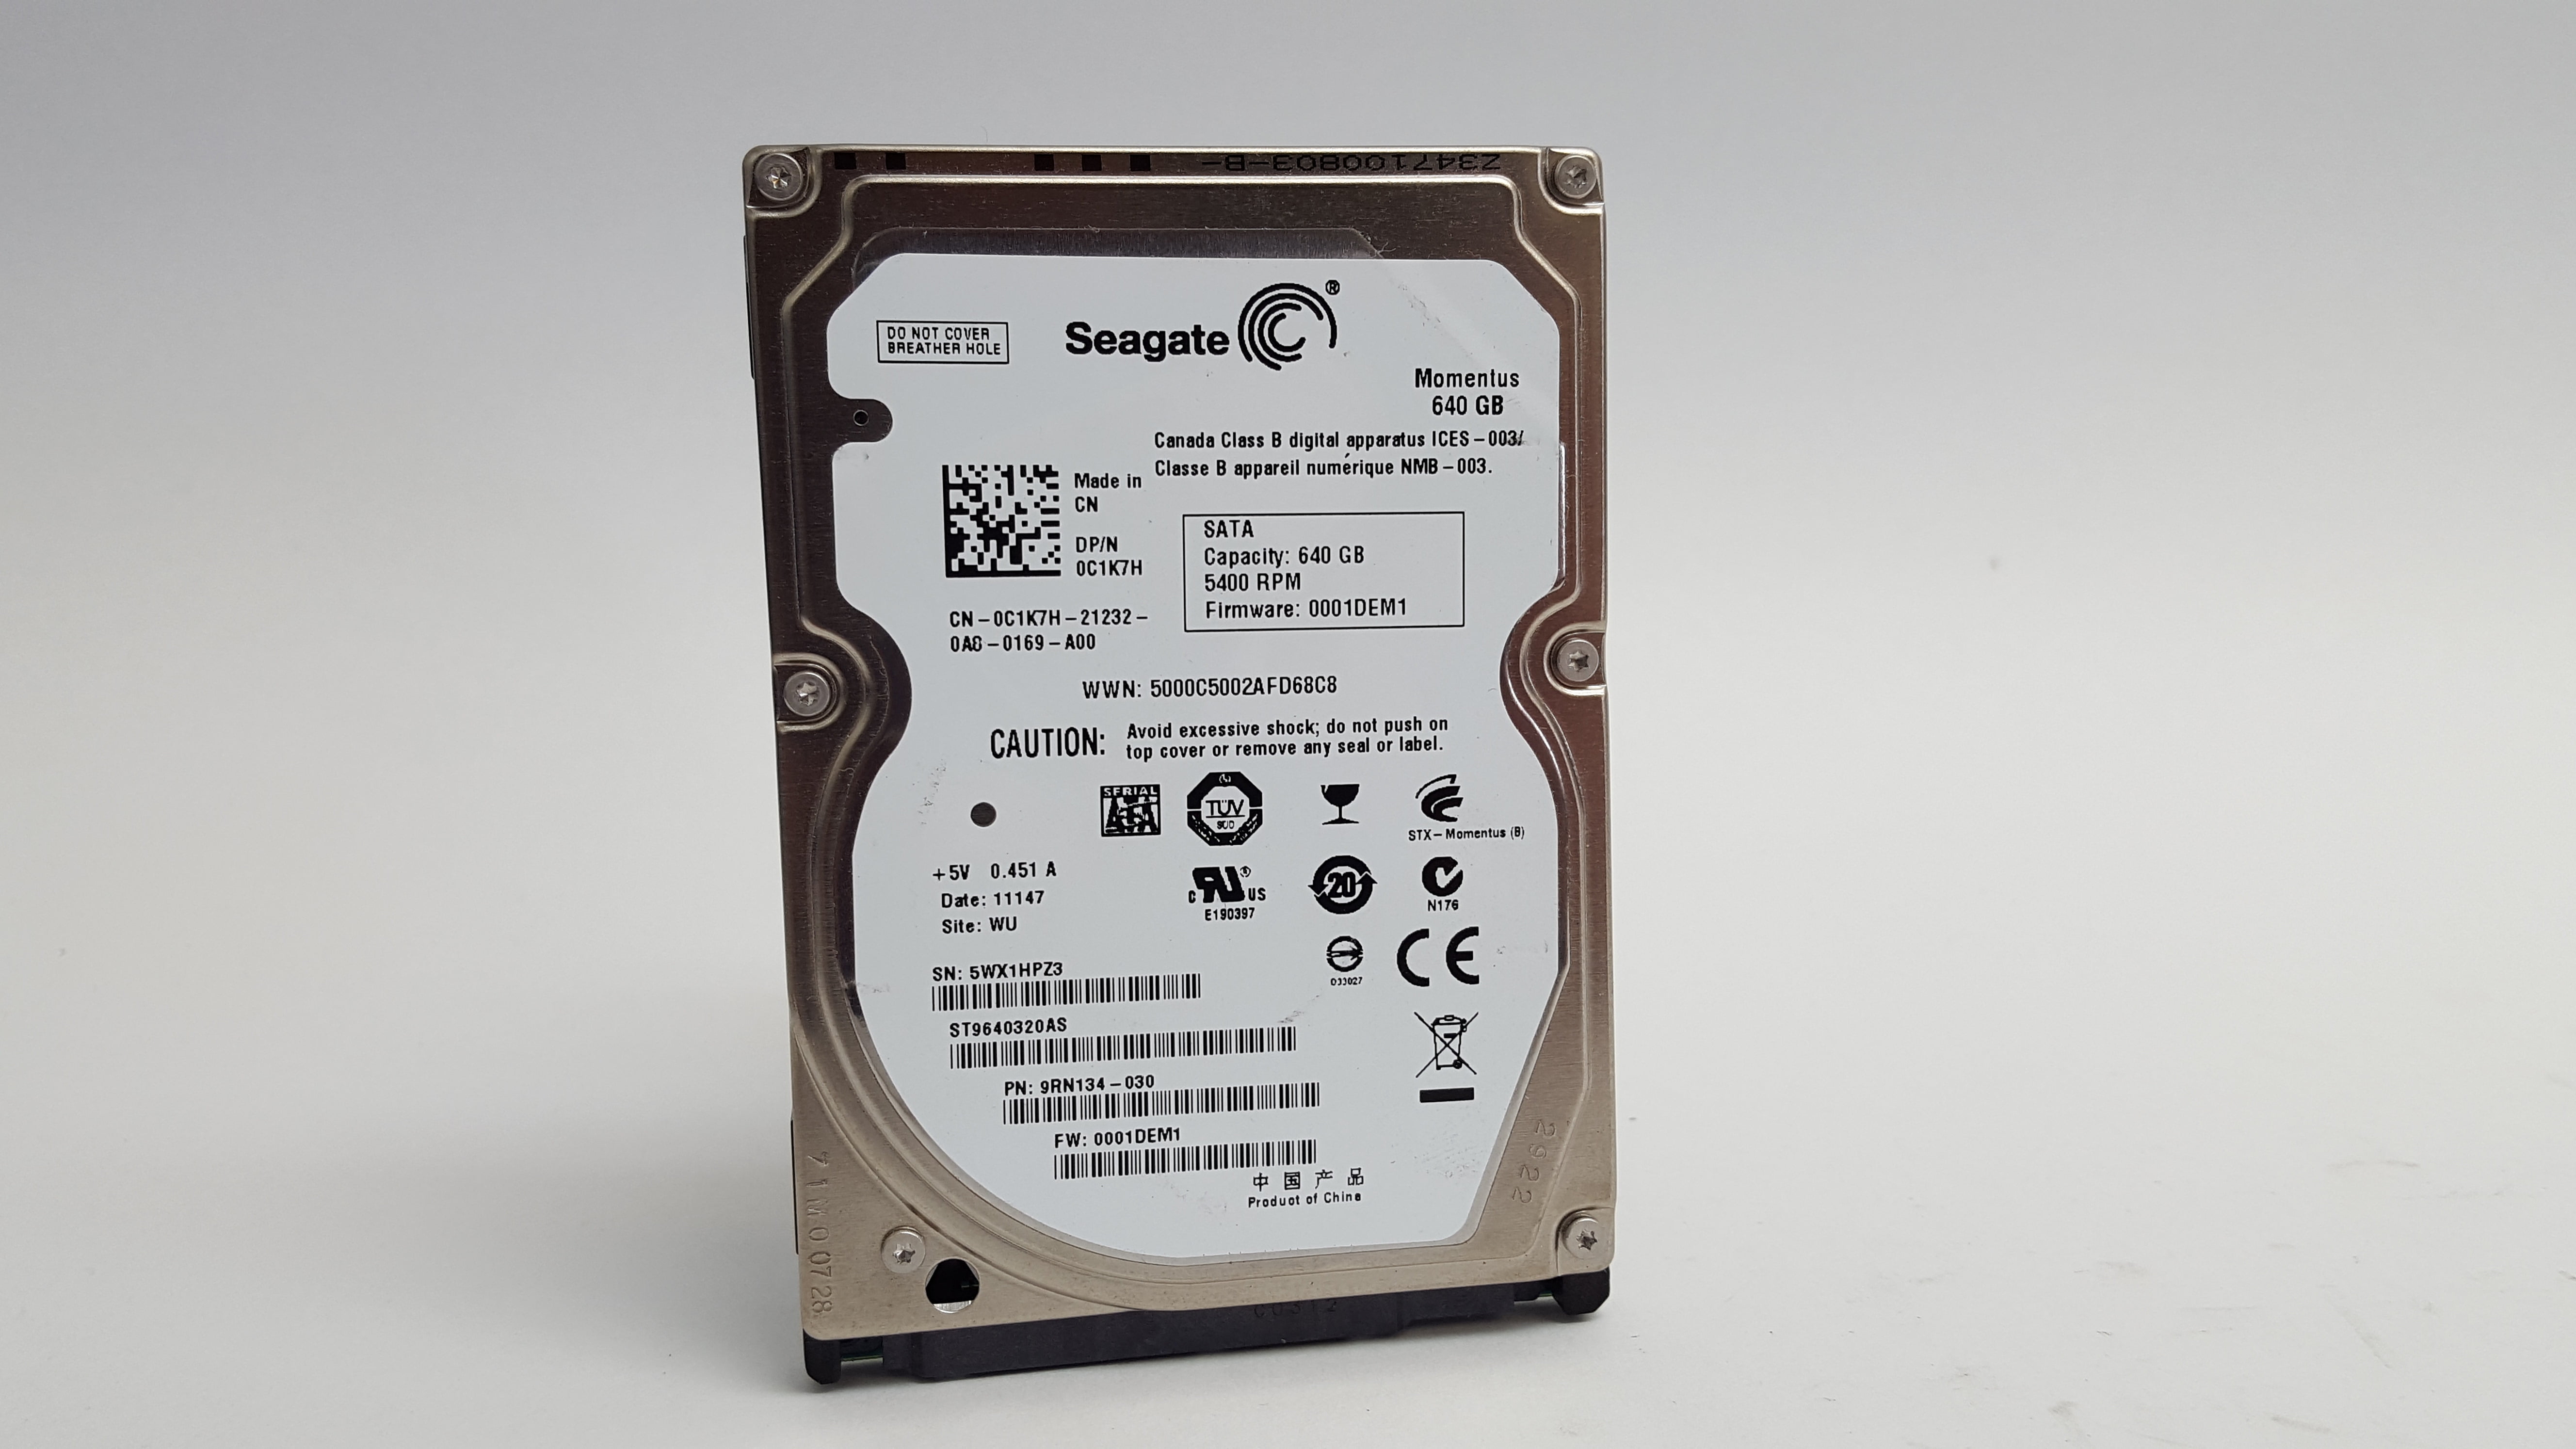 Refurbished Seagate Momentus ST9640320AS 640GB 2.5" SATA II Laptop Hard Drive